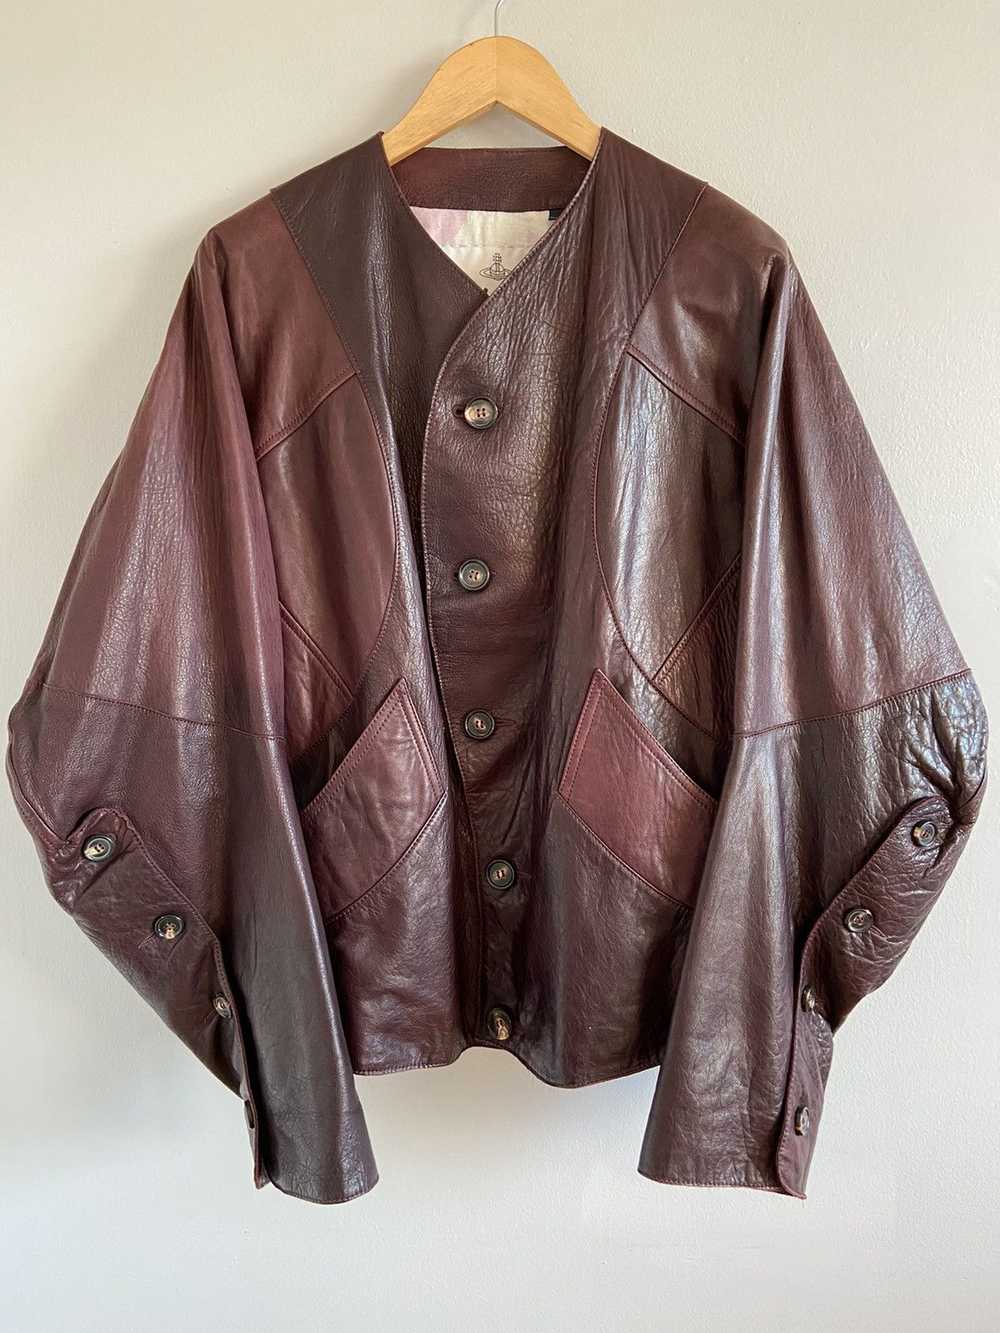 Vivienne Westwood F/W17 Ovine Leather Jacket - image 1